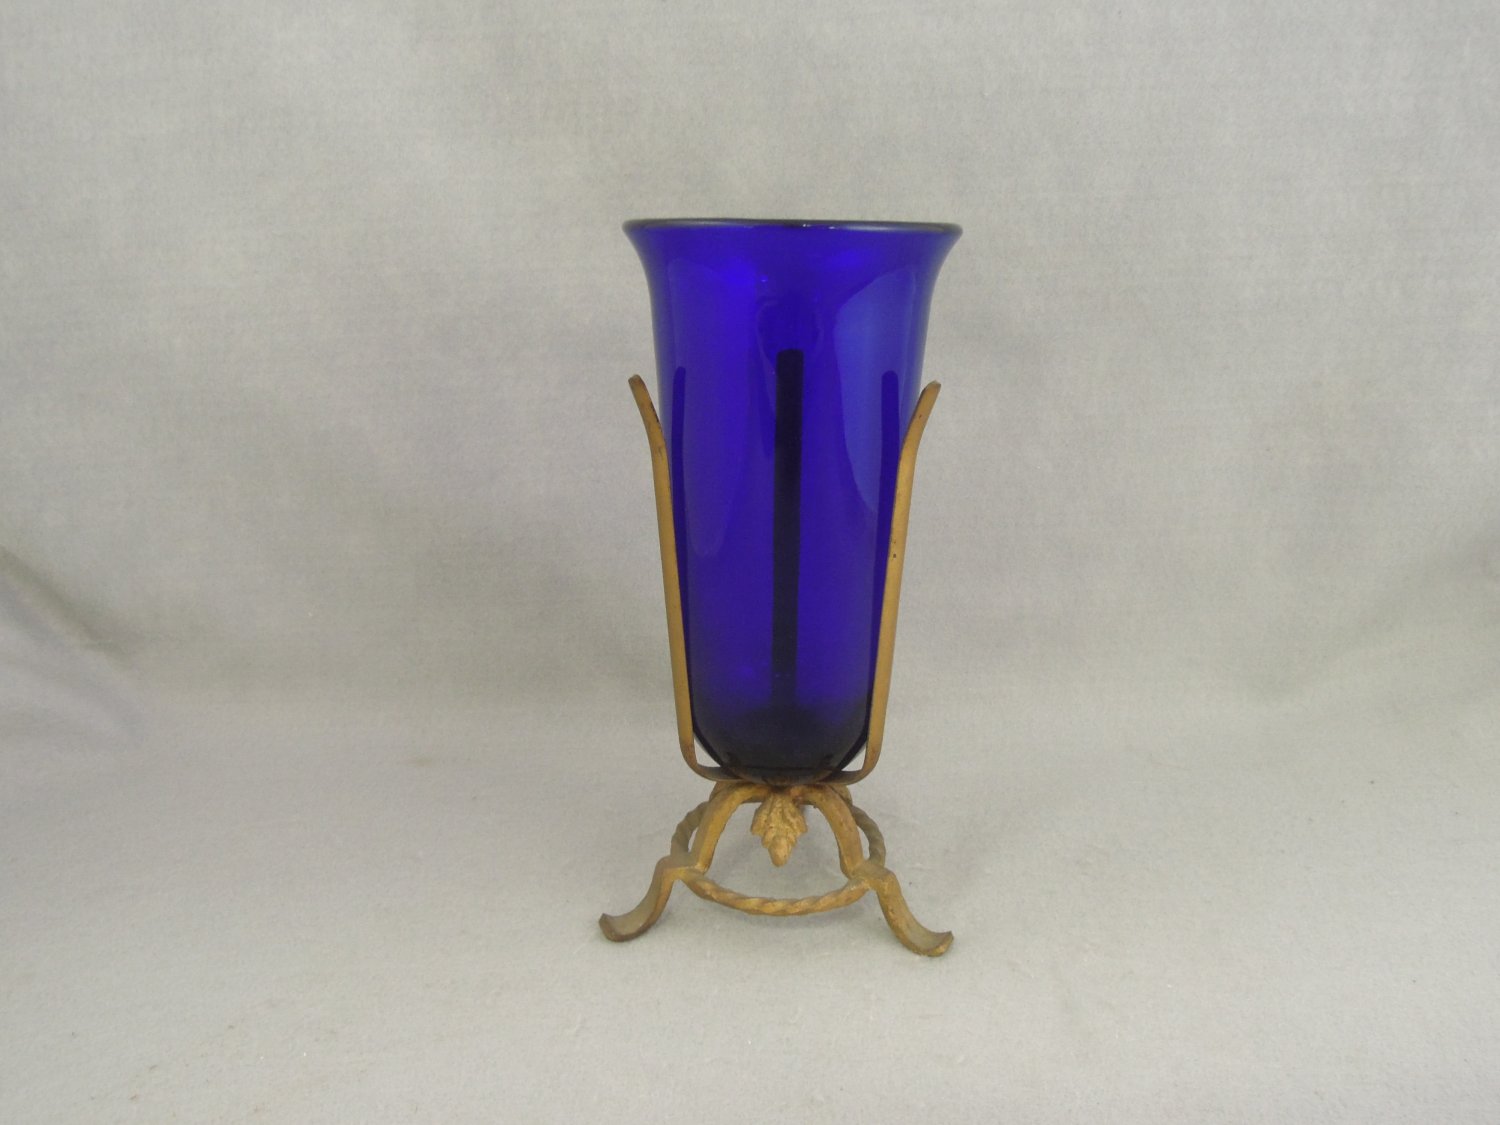 Vitnage Cobalt Blue Glass Vase in Iron gold Leaf Motif holder